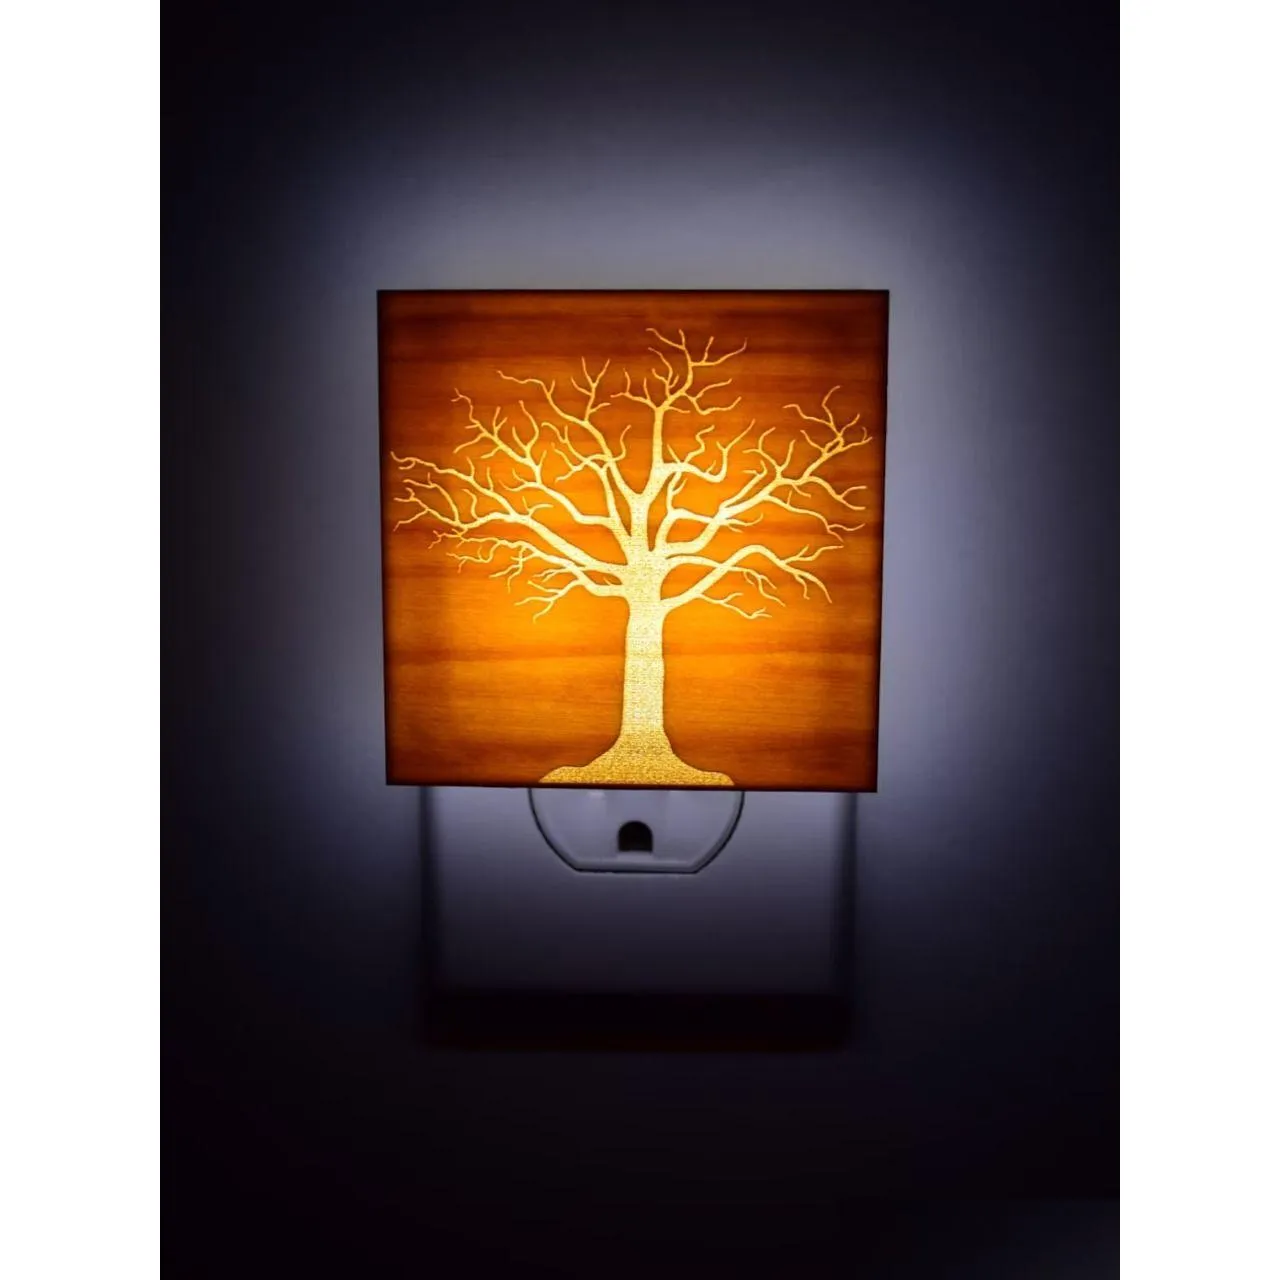 أضواء الليل شجرة الضوء بونساي ديكور ريفي للحياة إسقاط تسليم الإضاءة الداخلية dhrrw